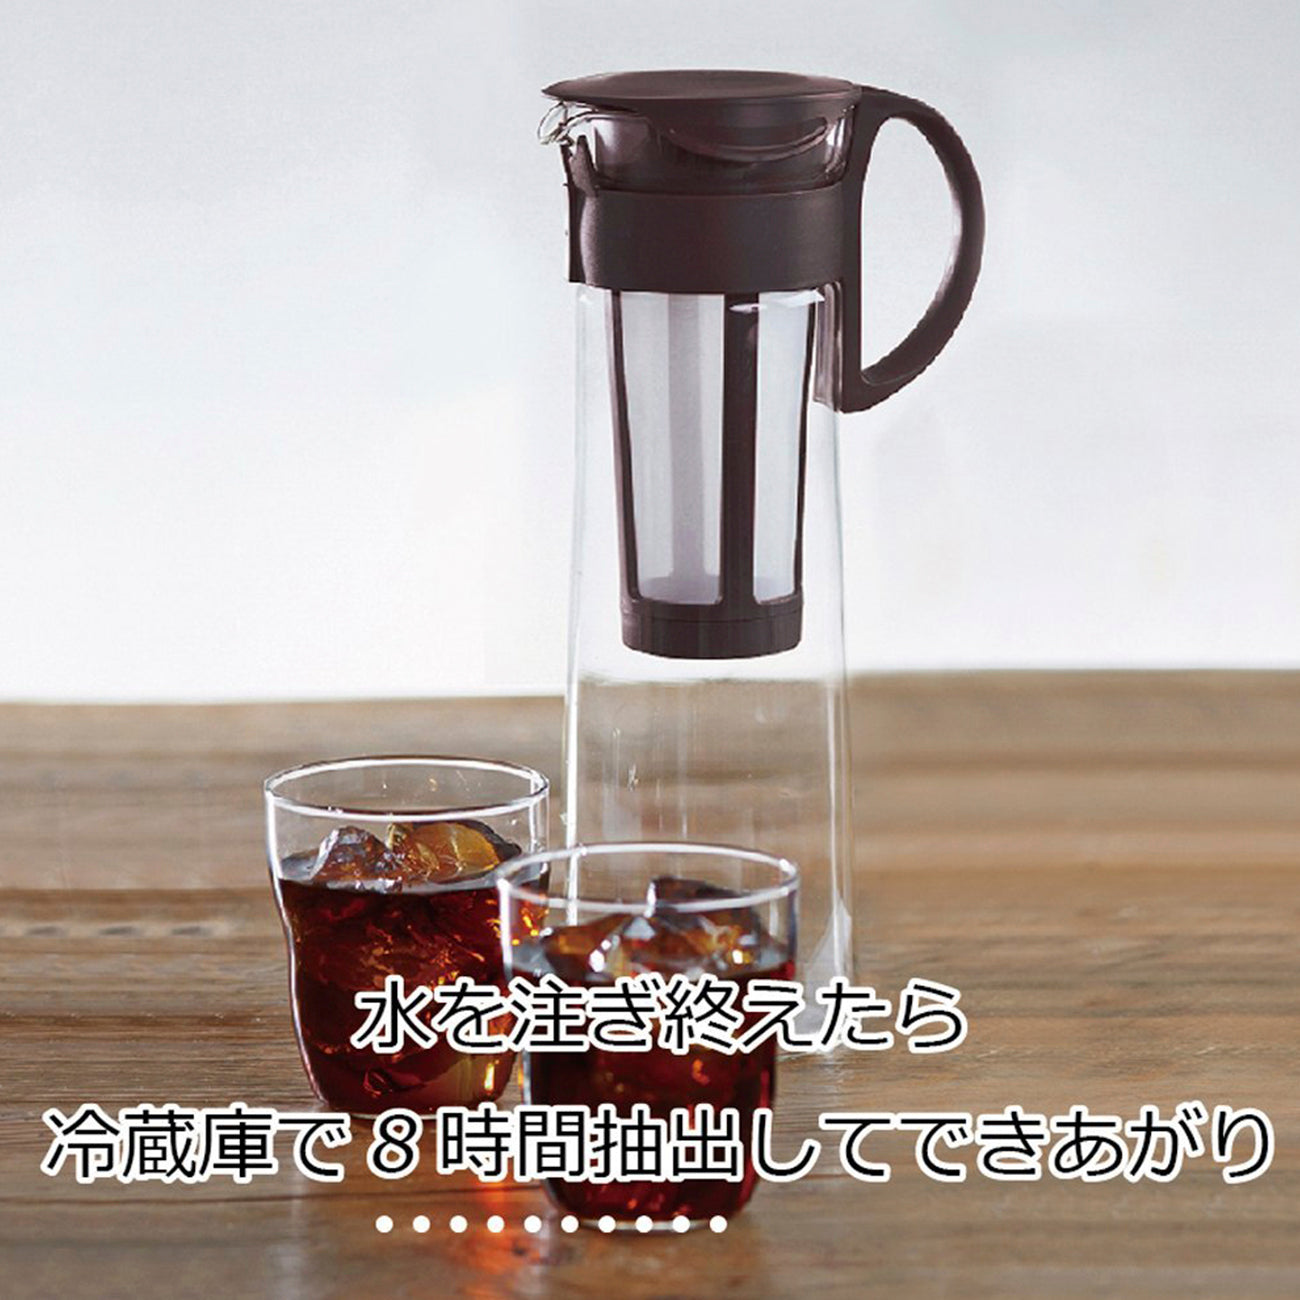 HARIO Mizudashi Cold Brew Coffee Pot 1000ml, Red – Eden Restaurant Supply